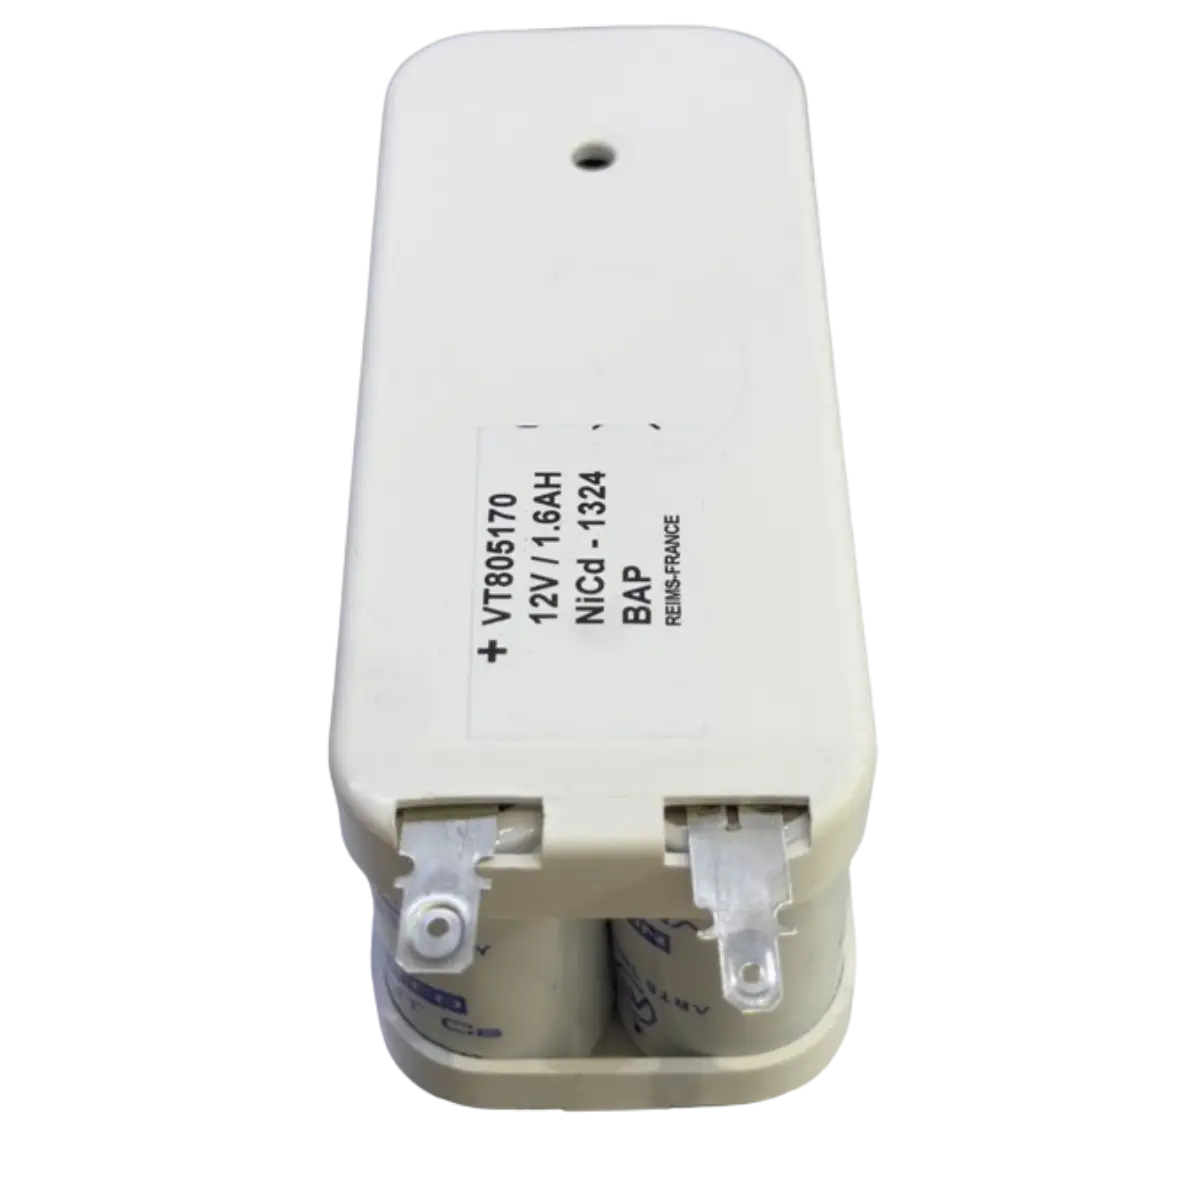 Batterie NiCd pour éclairage de secours BAES 805170D